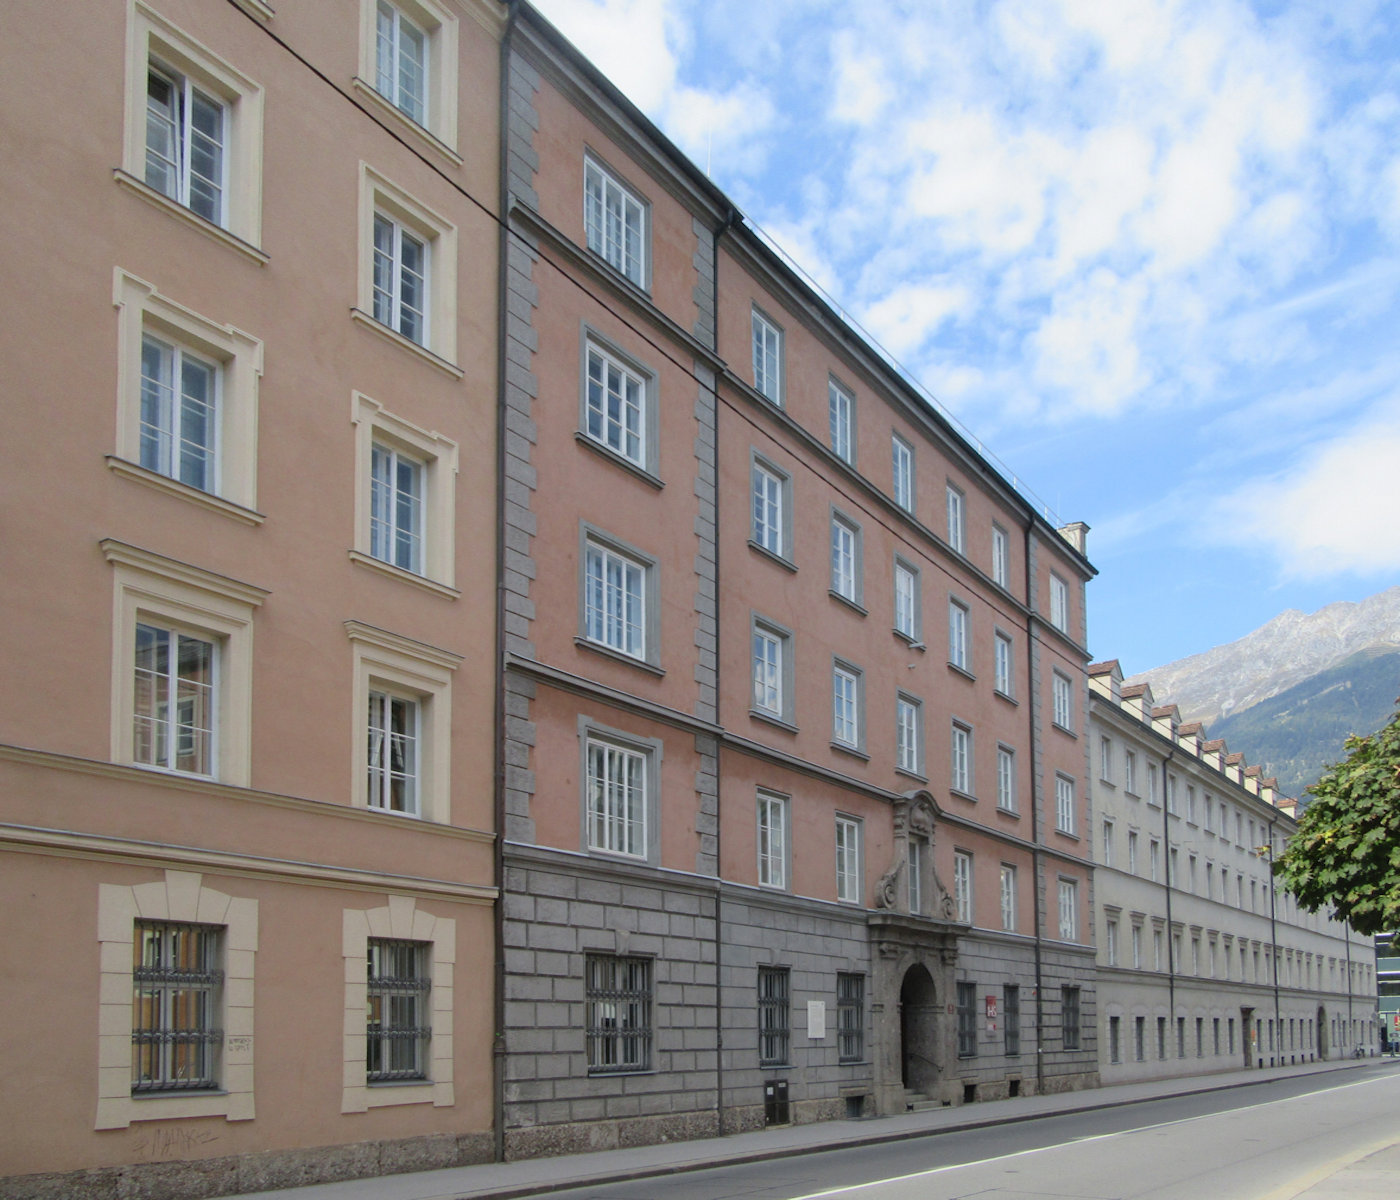 Theologischen Konvikt der Jesuiten in Innsbruck, gegründet 1562 von Petrus Canisius, 1911 verlegt und 2013 an seinen Ursprungsort zurückgekehrt